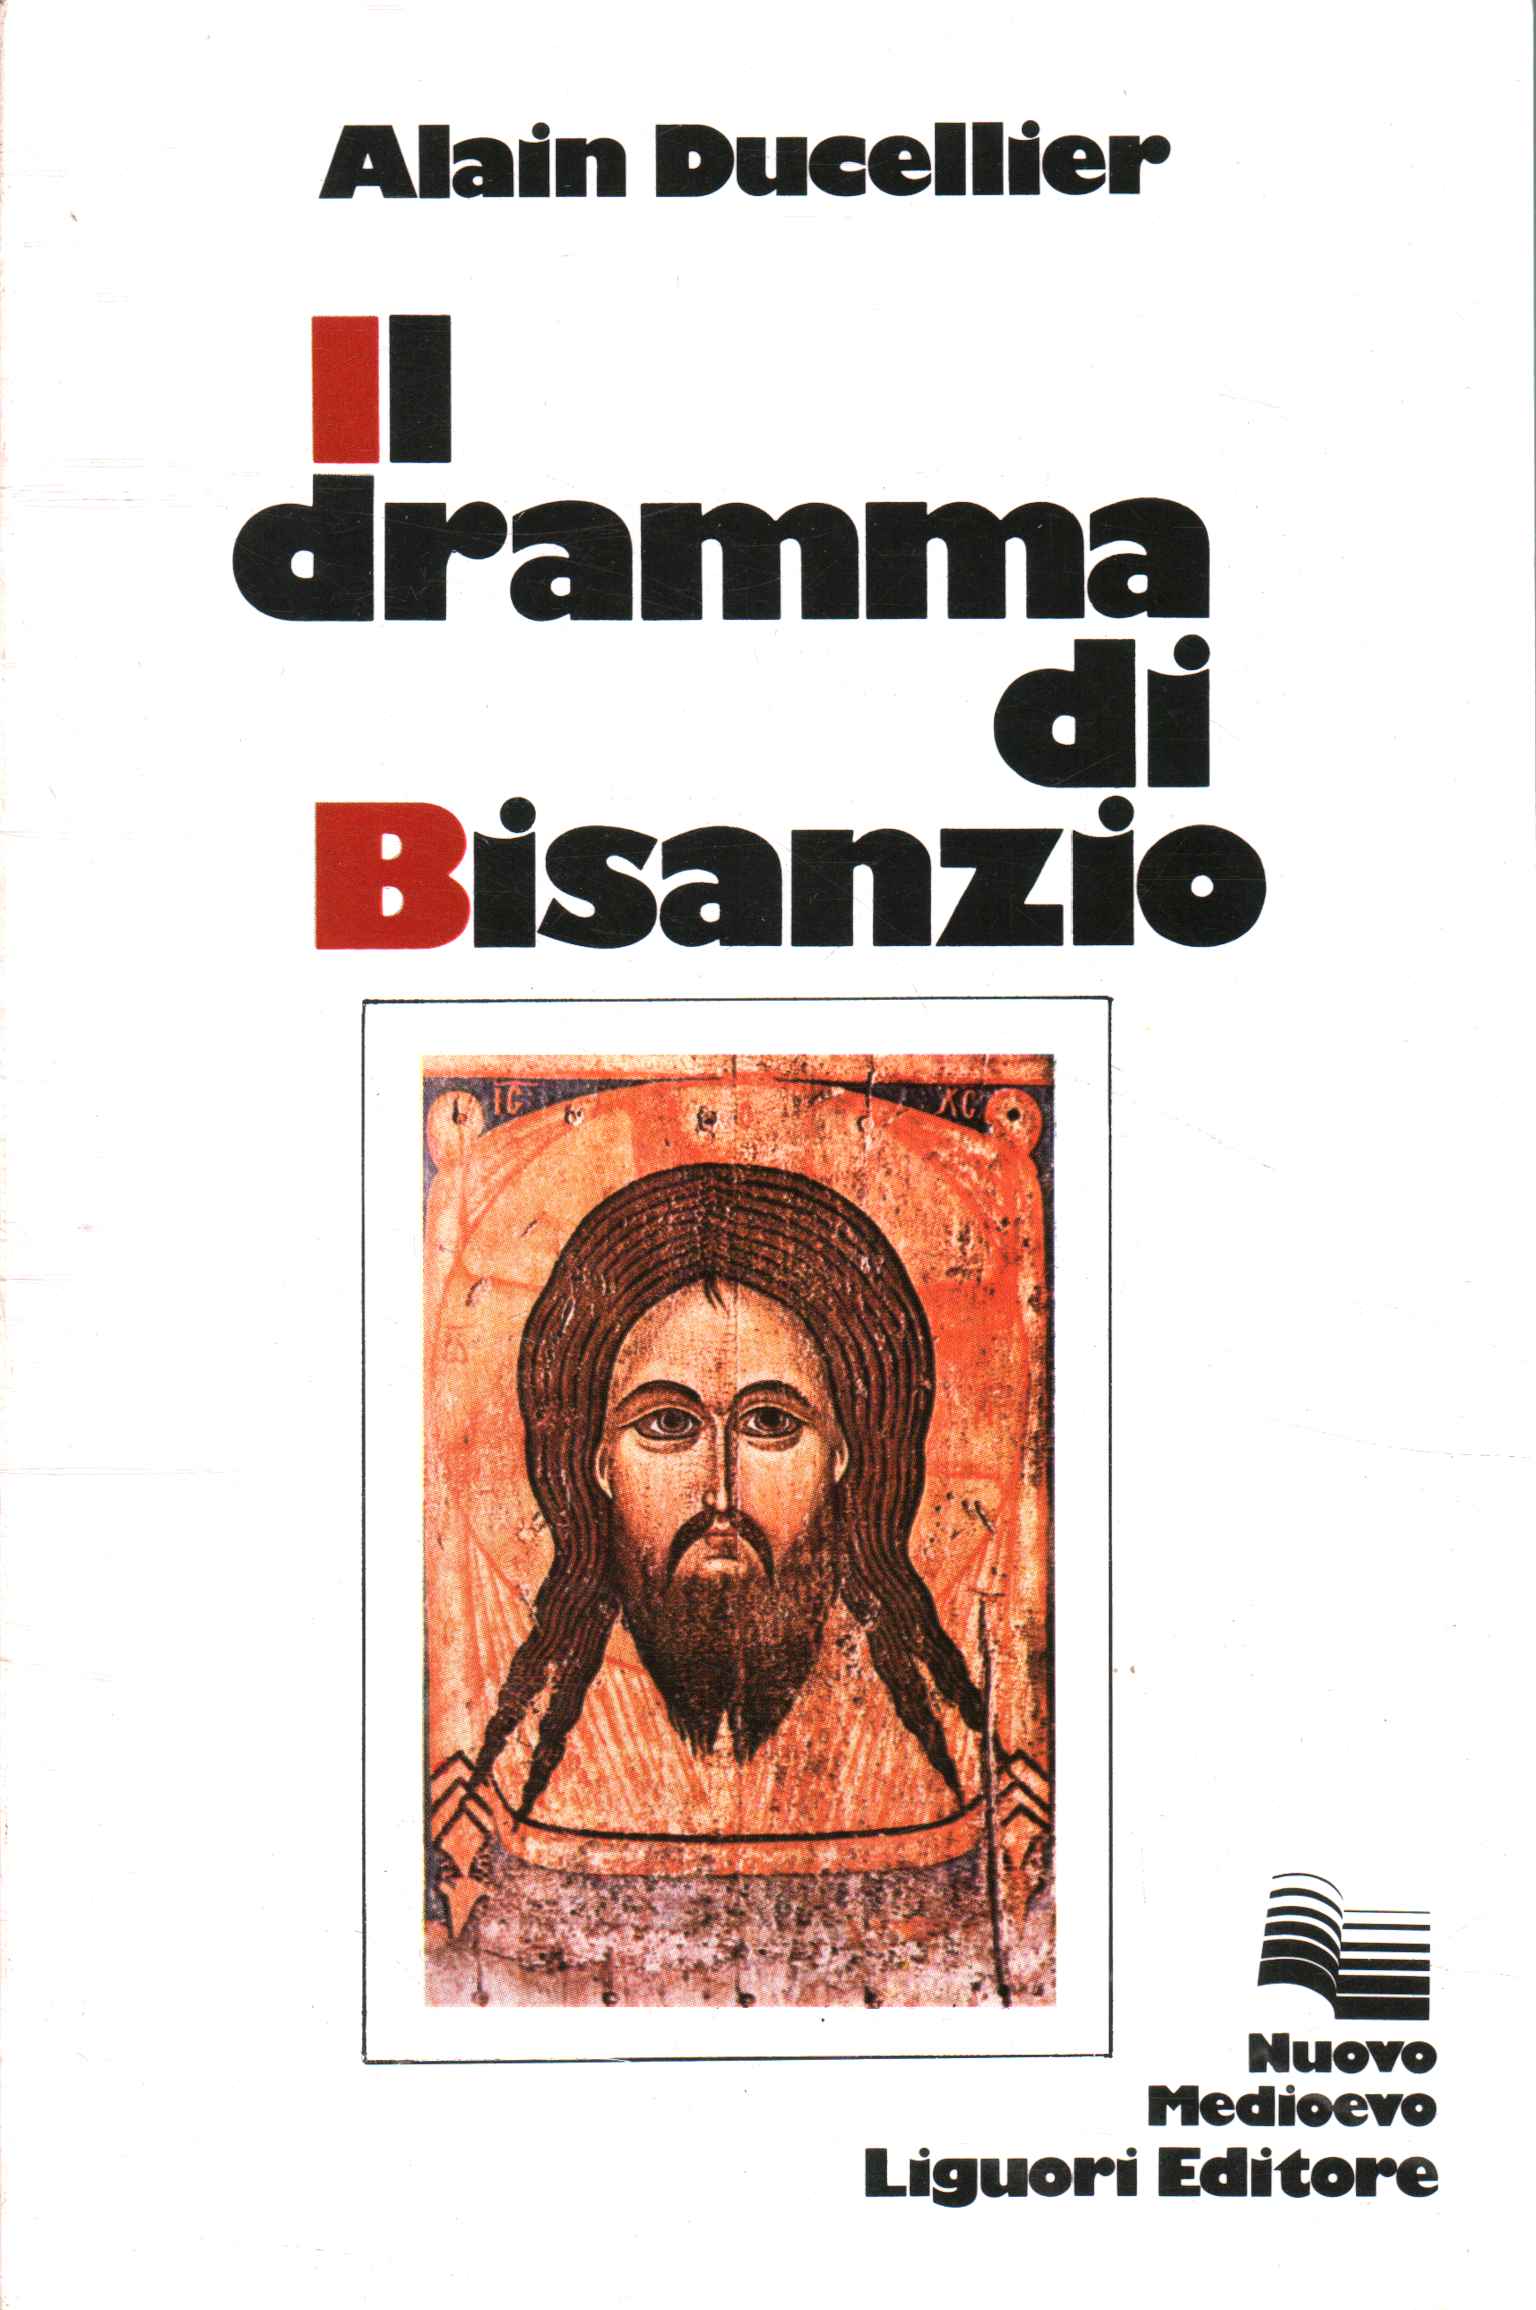 El drama de Bizancio